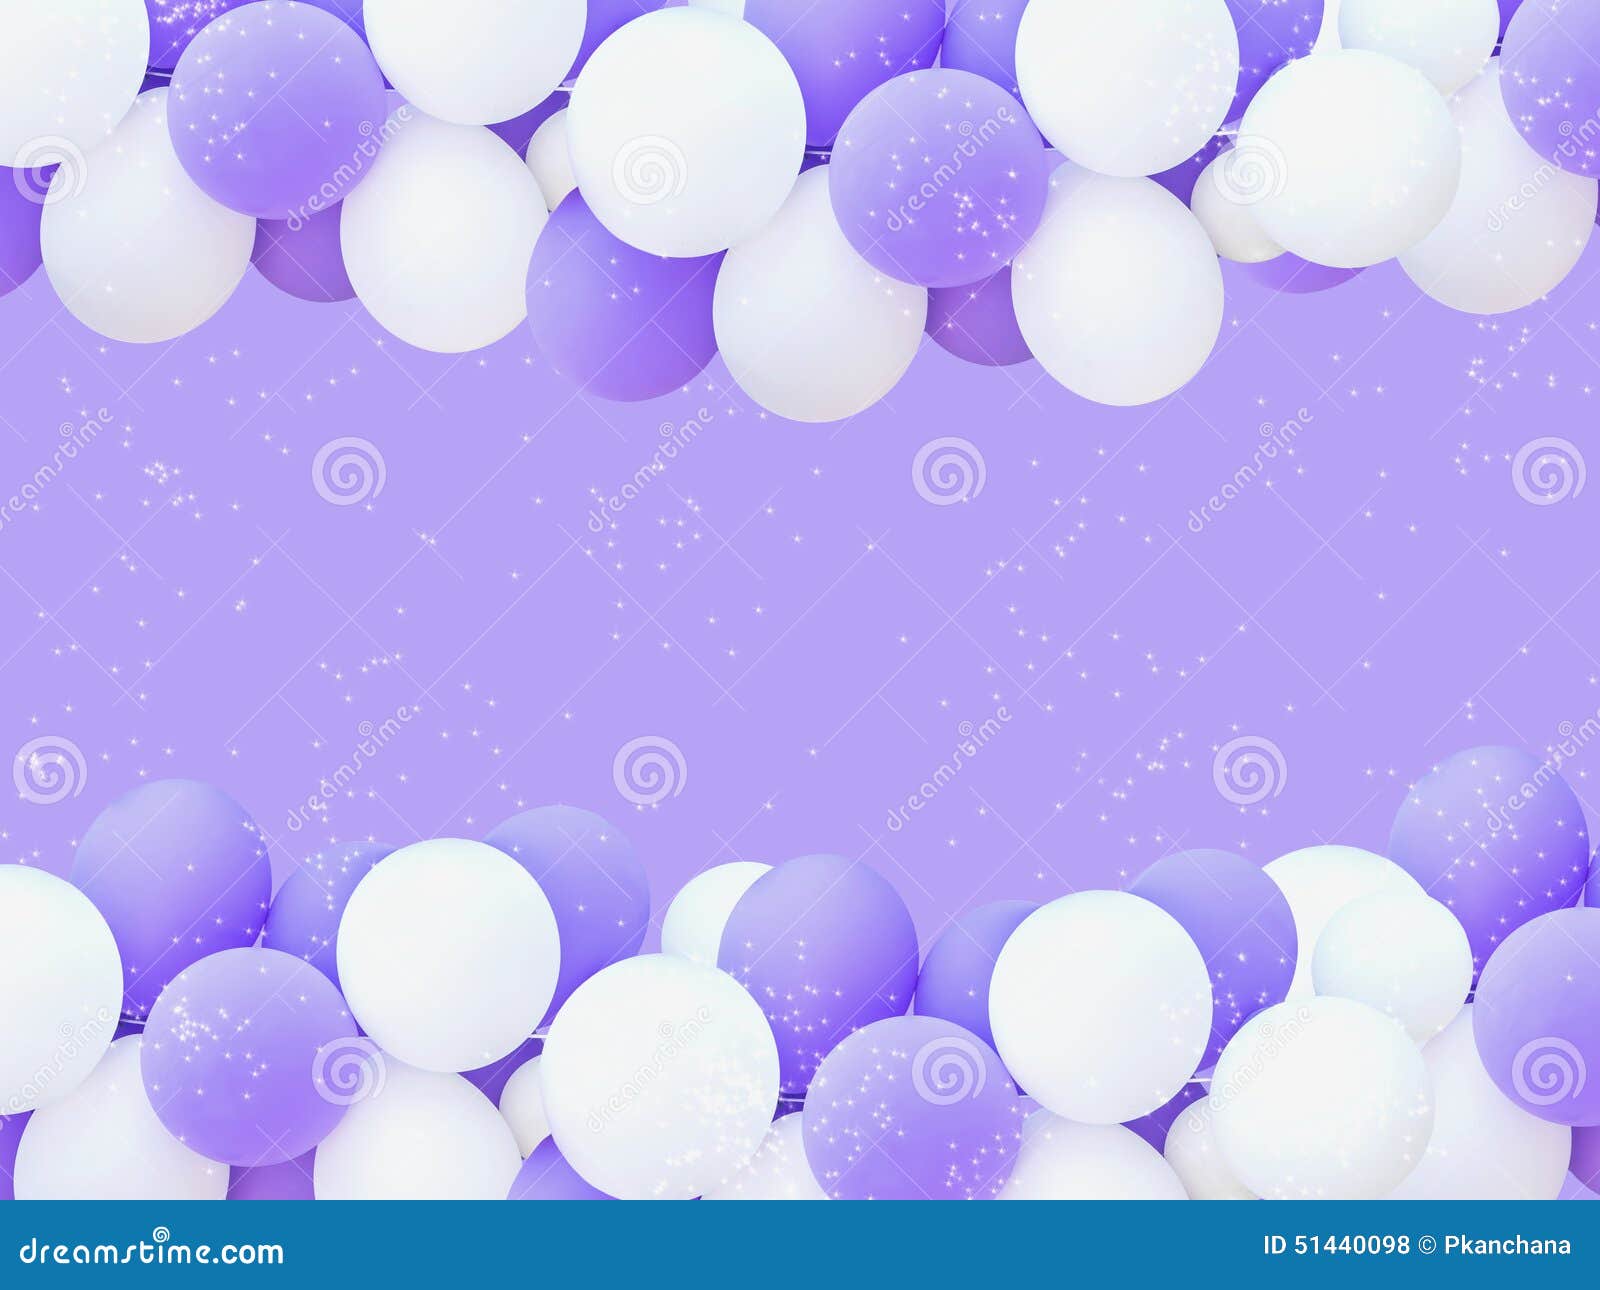 白色紫色气球帷幔户外婚礼效果图设计图免费下载_2872像素_psd格式_编号43849326-千图网